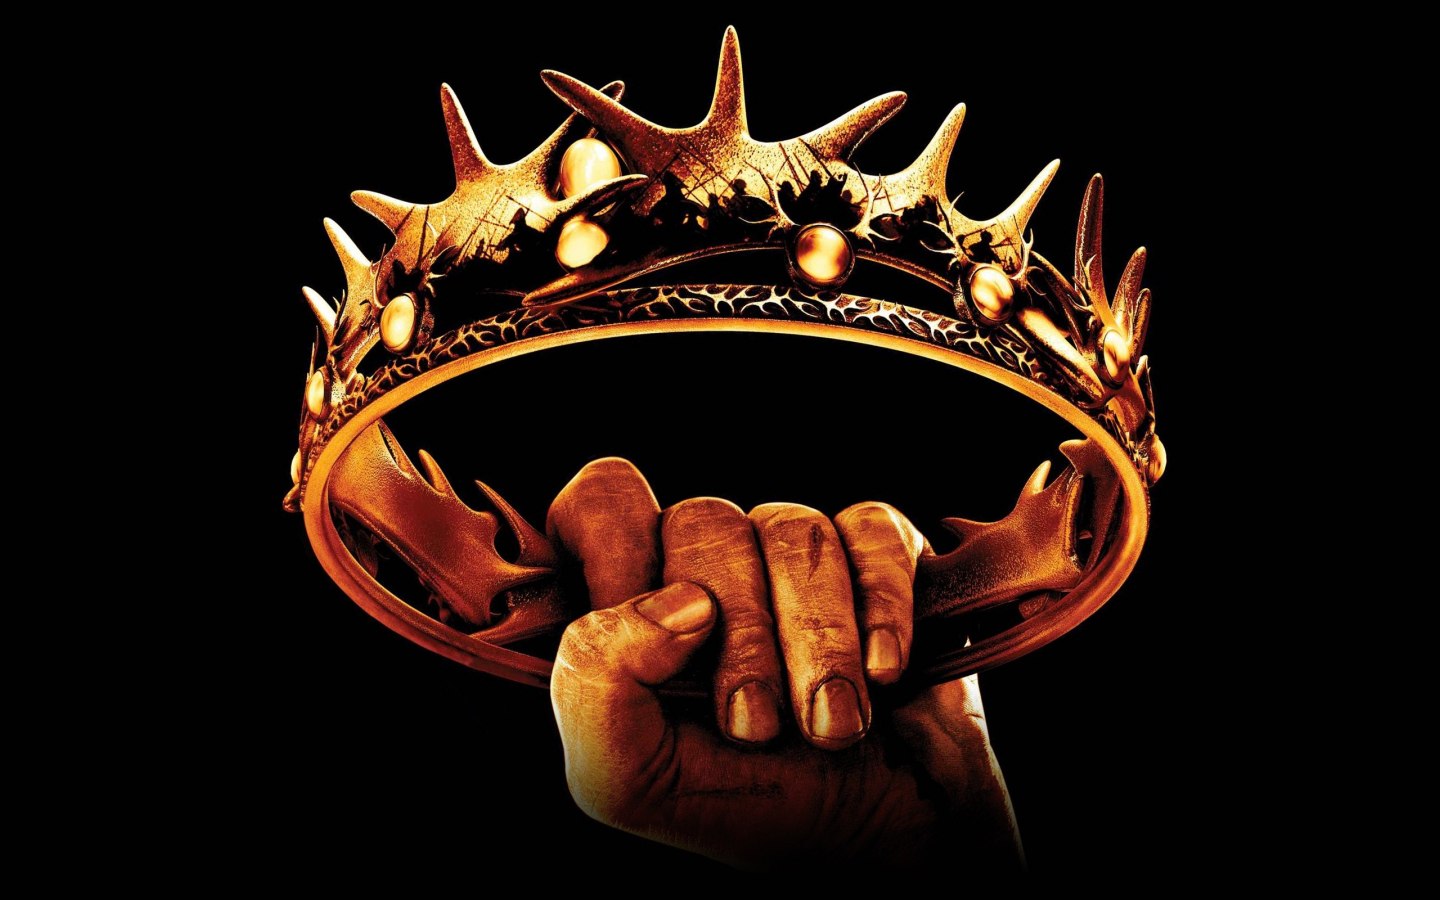 Game of thrones, crown, clash of kings, tv series